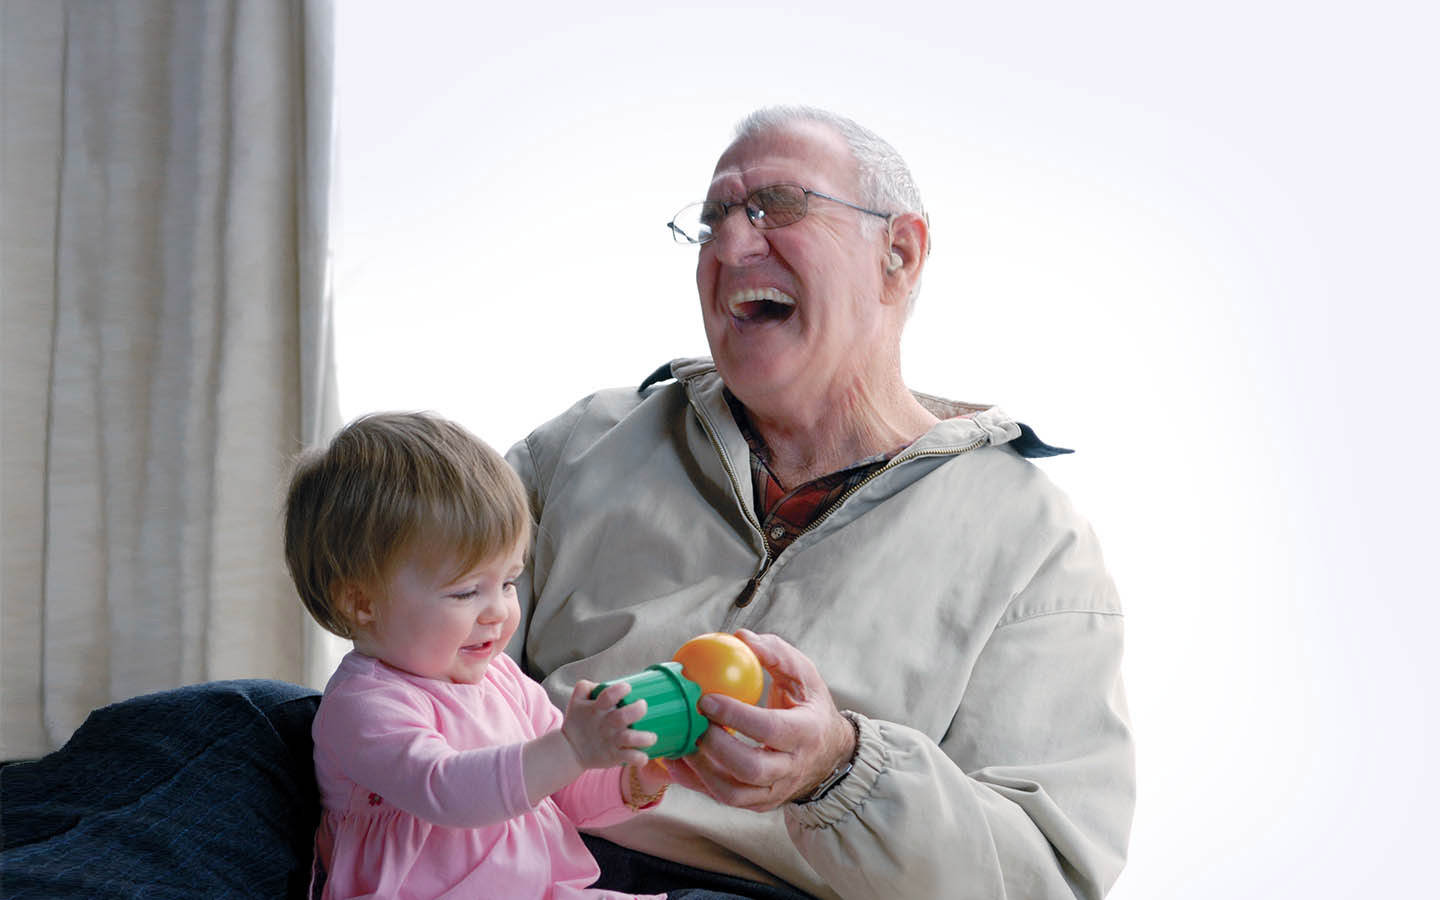 ผู้รับการผ่าตัดฝังประสาทหูเทียมที่เป็นคนสูงวัยกำลังหัวเราะโดยมีหลานชายนั่งอยู่บนตักของเขา